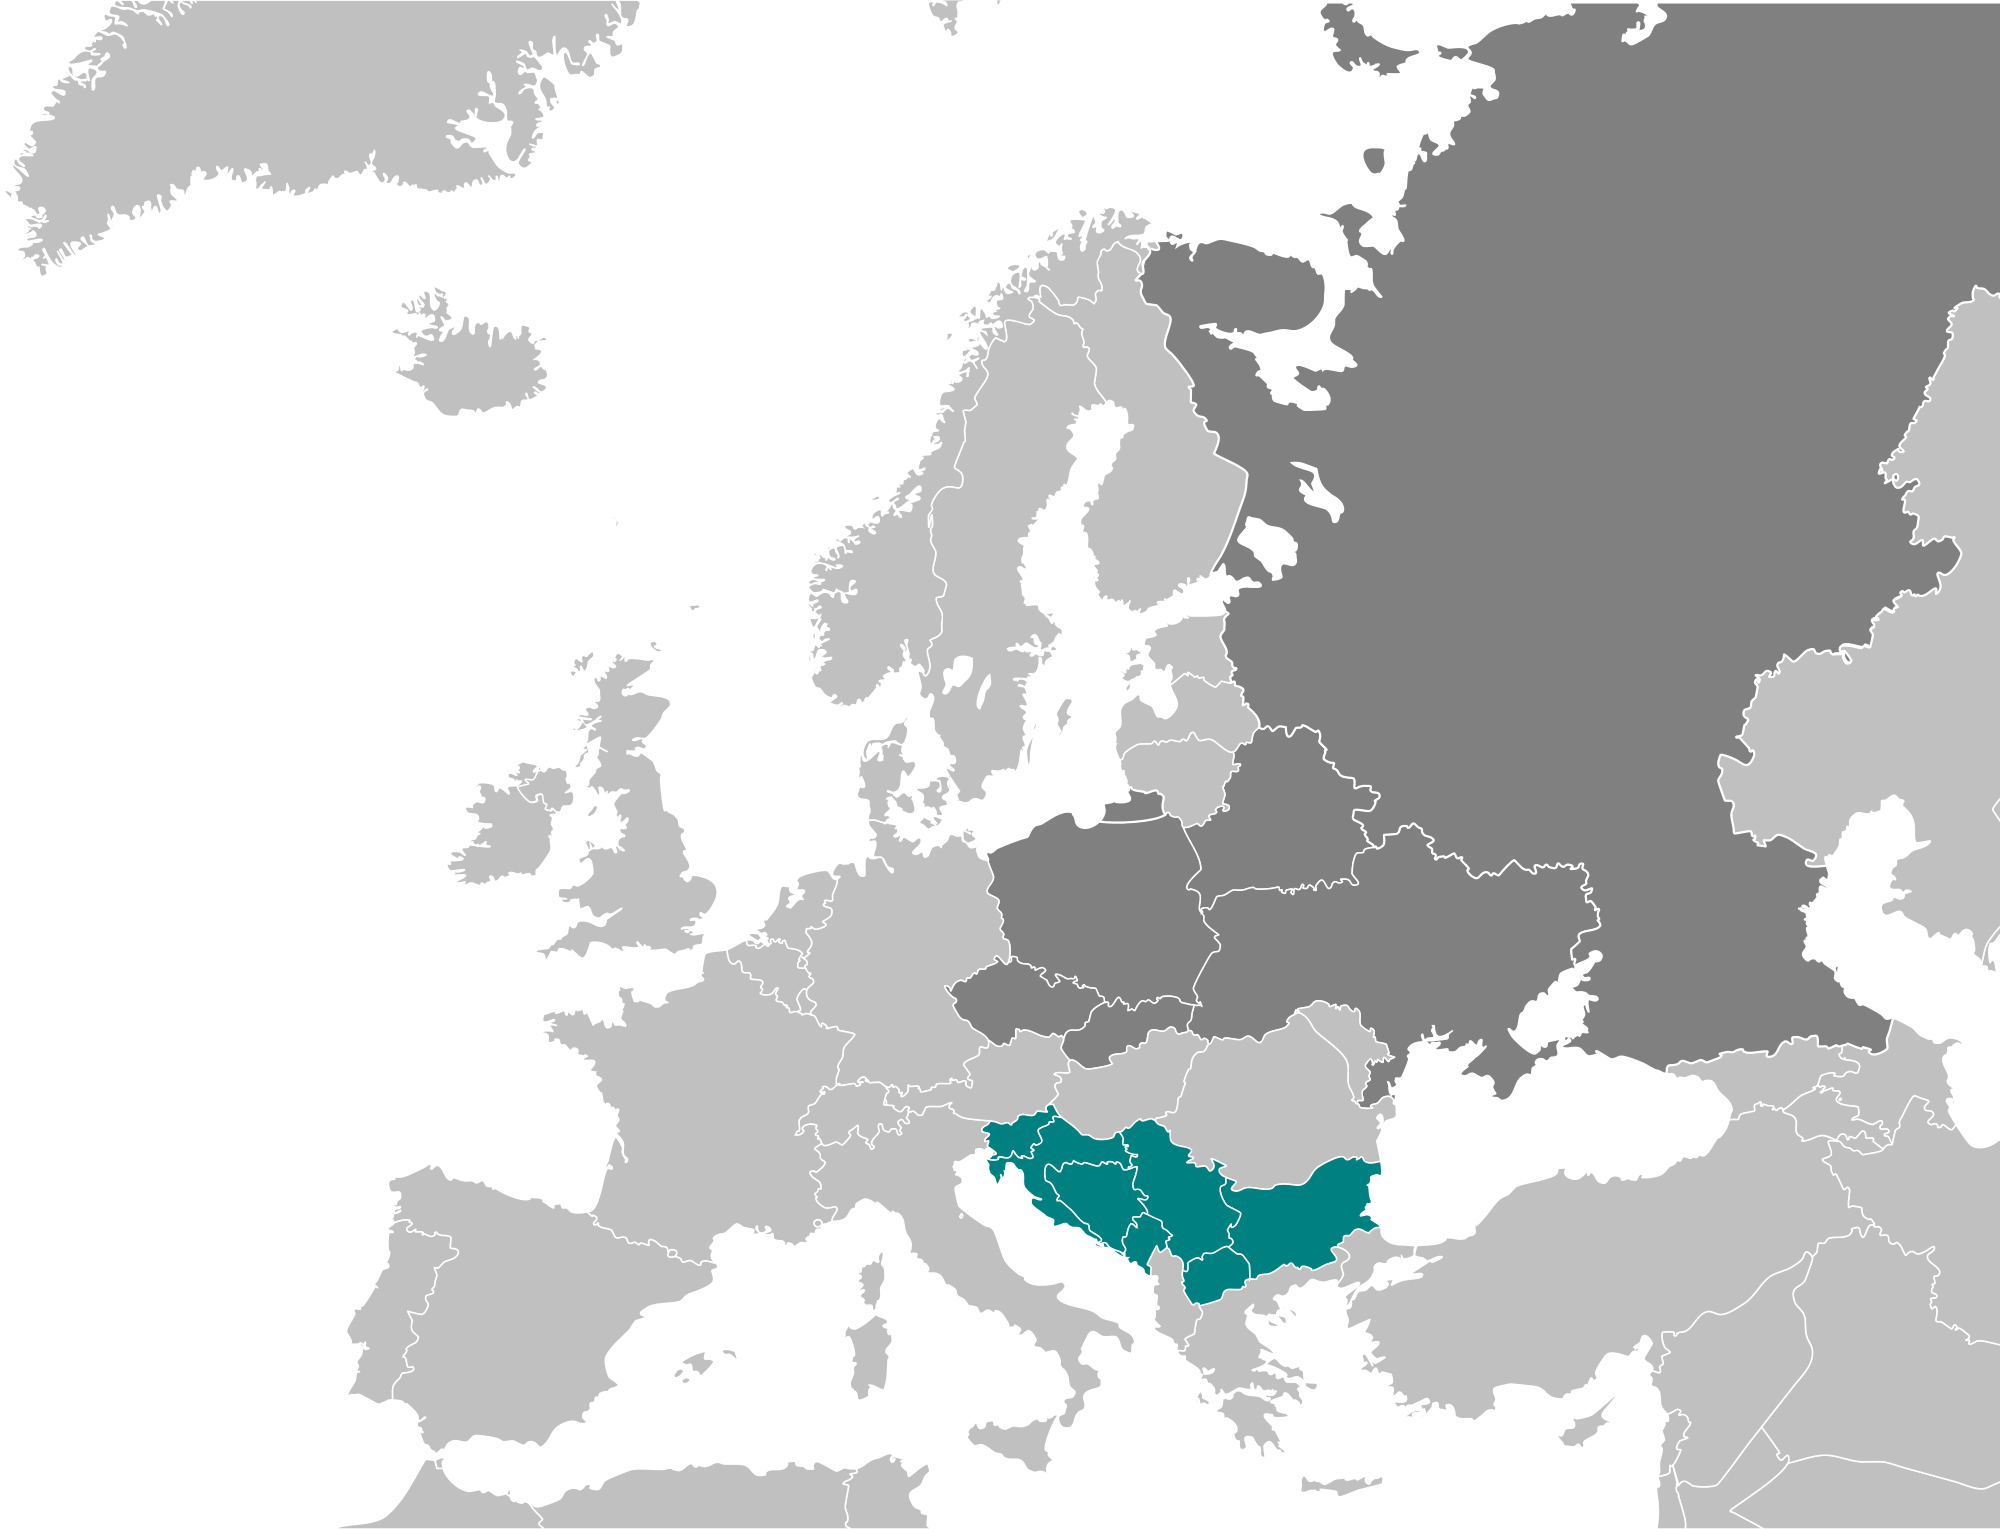 South Slav provinces (Yugoslavia)